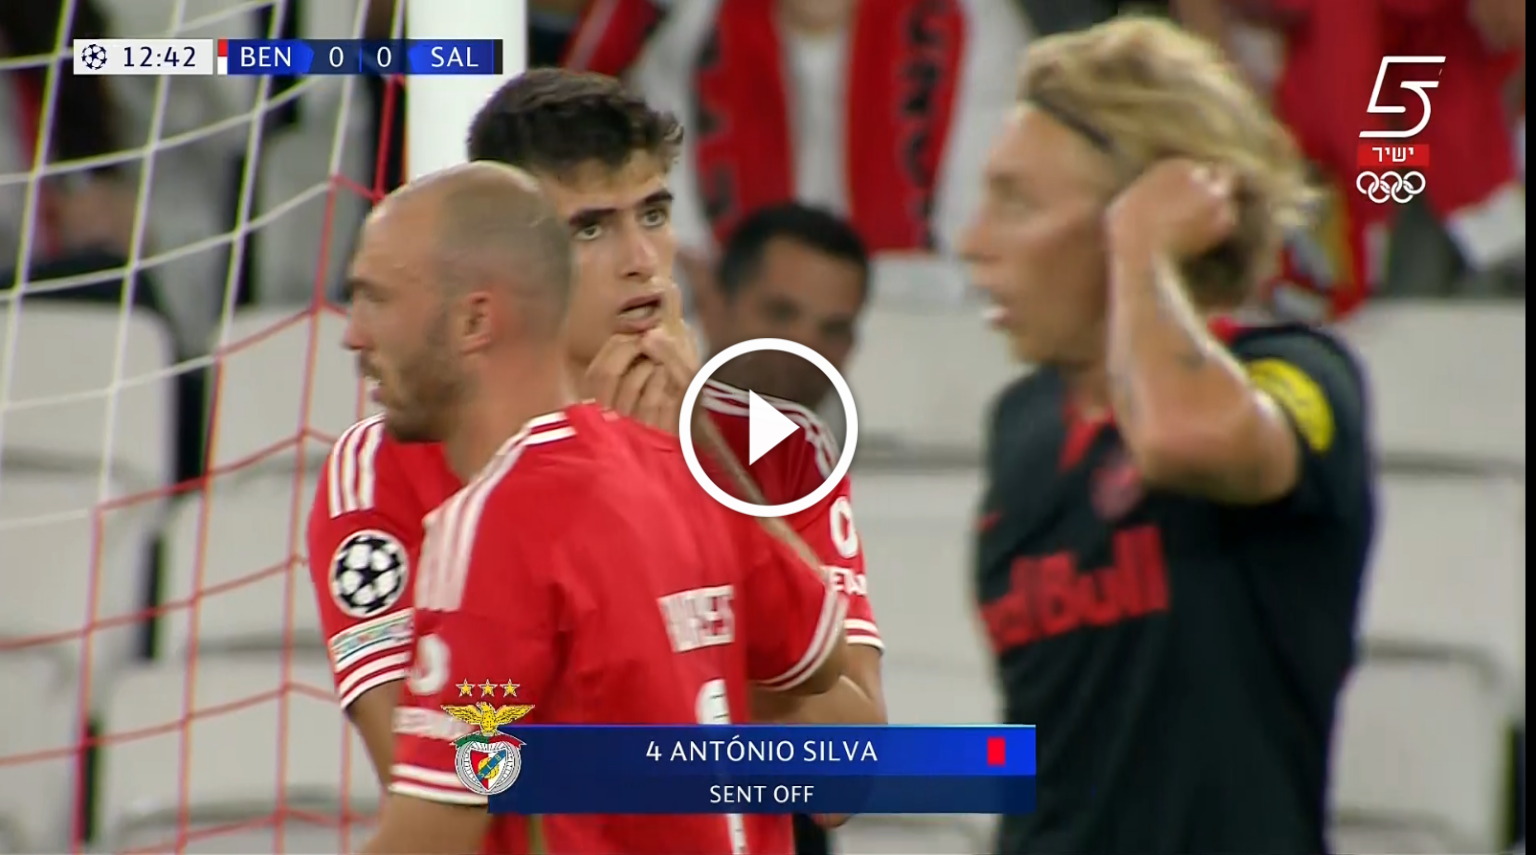 لقطة طرد لاعب بنفيكا الغريبة أمام سالزبورج في دوري أبطال أوروبا